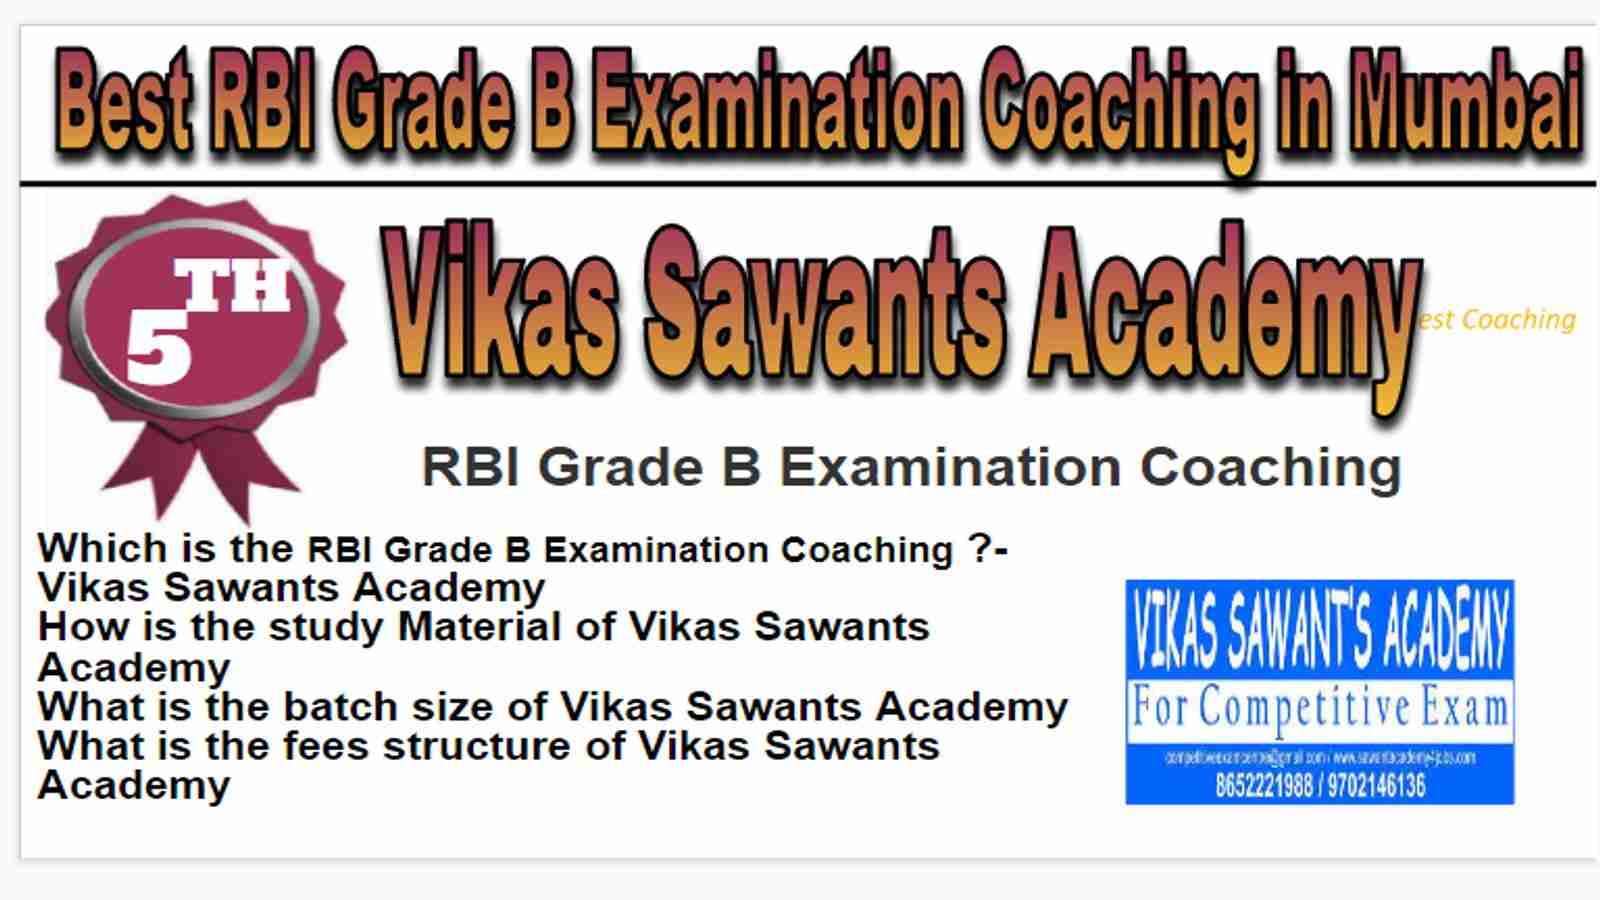 Rank 5 Best RBI Grade B Examination Coaching in Mumbai